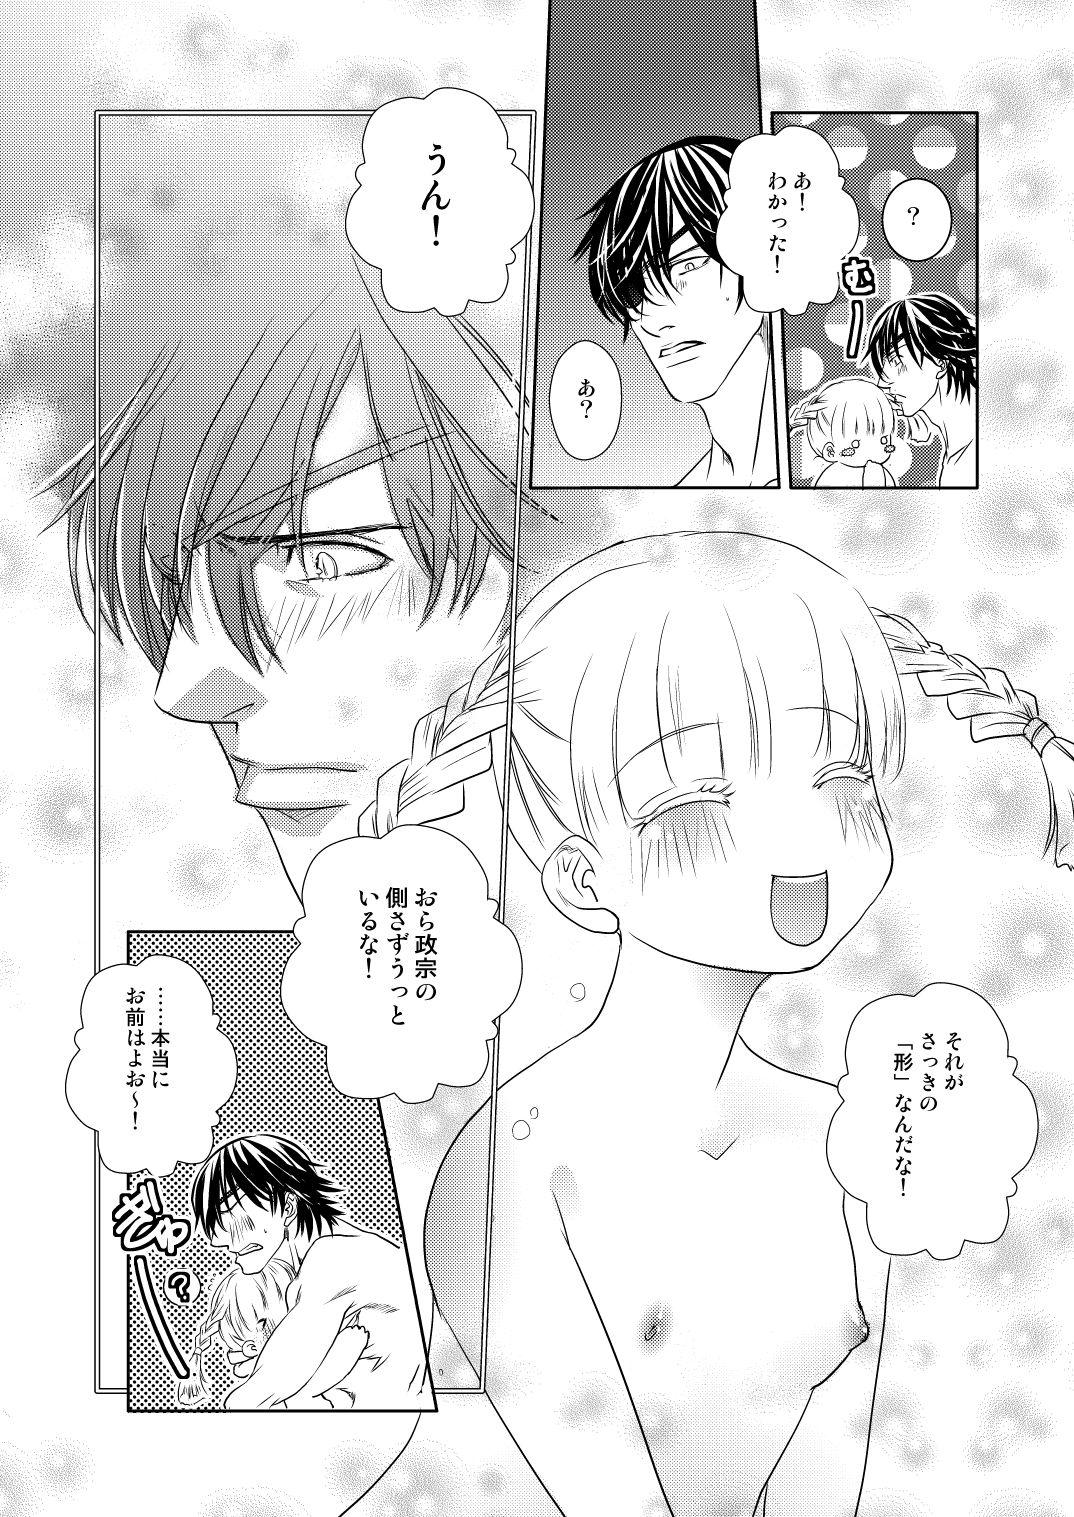 English Fuyu no Okomori DateItsu Manga - Sengoku basara Amature Sex - Page 10